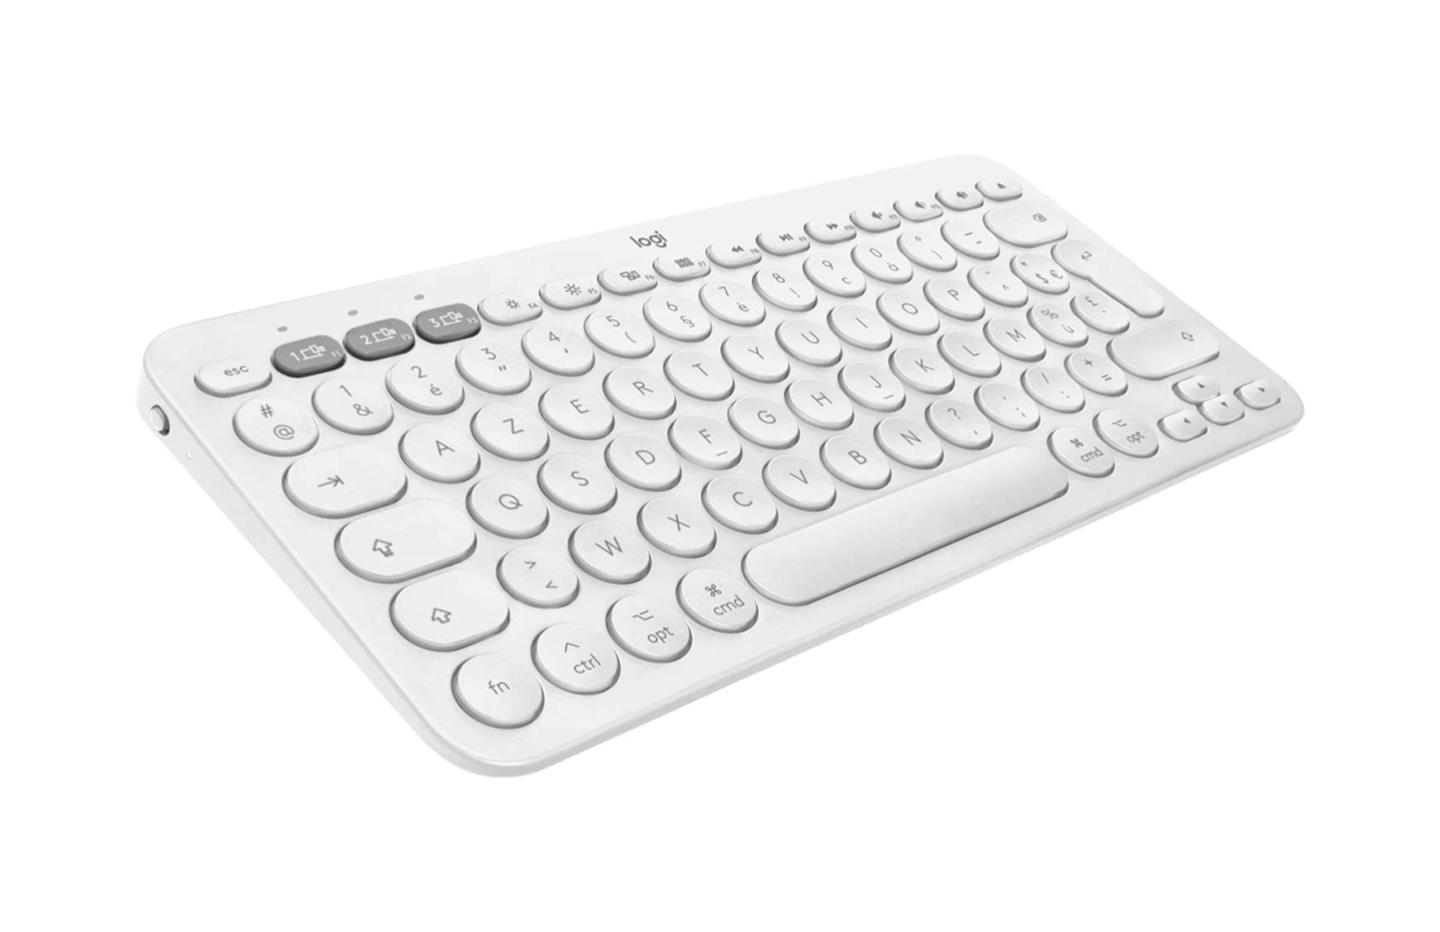 Logitech K380 : belle baisse de prix pour ce clavier compact et multidispositif